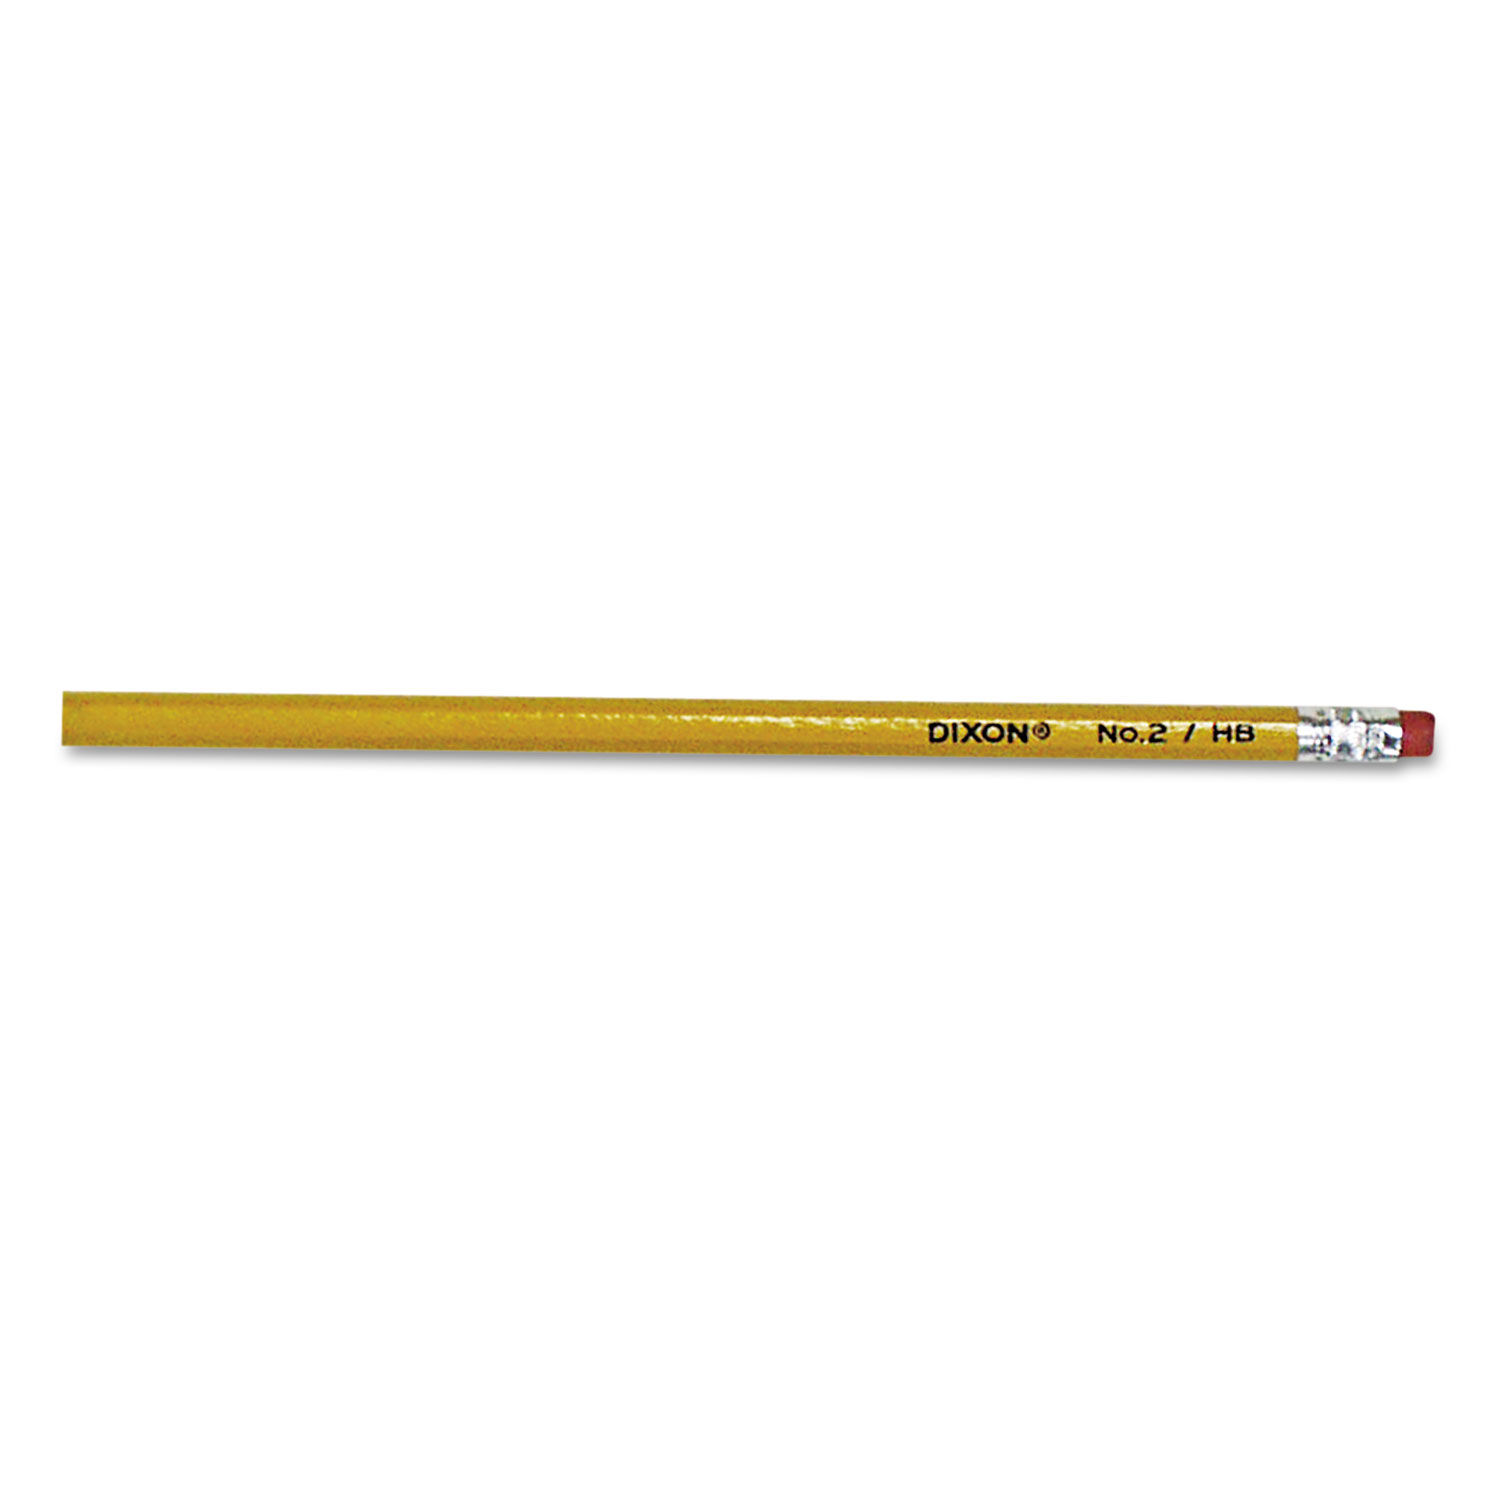 No. 2 Pencil HB (#2), Black Lead, Yellow Barrel, 144/Box